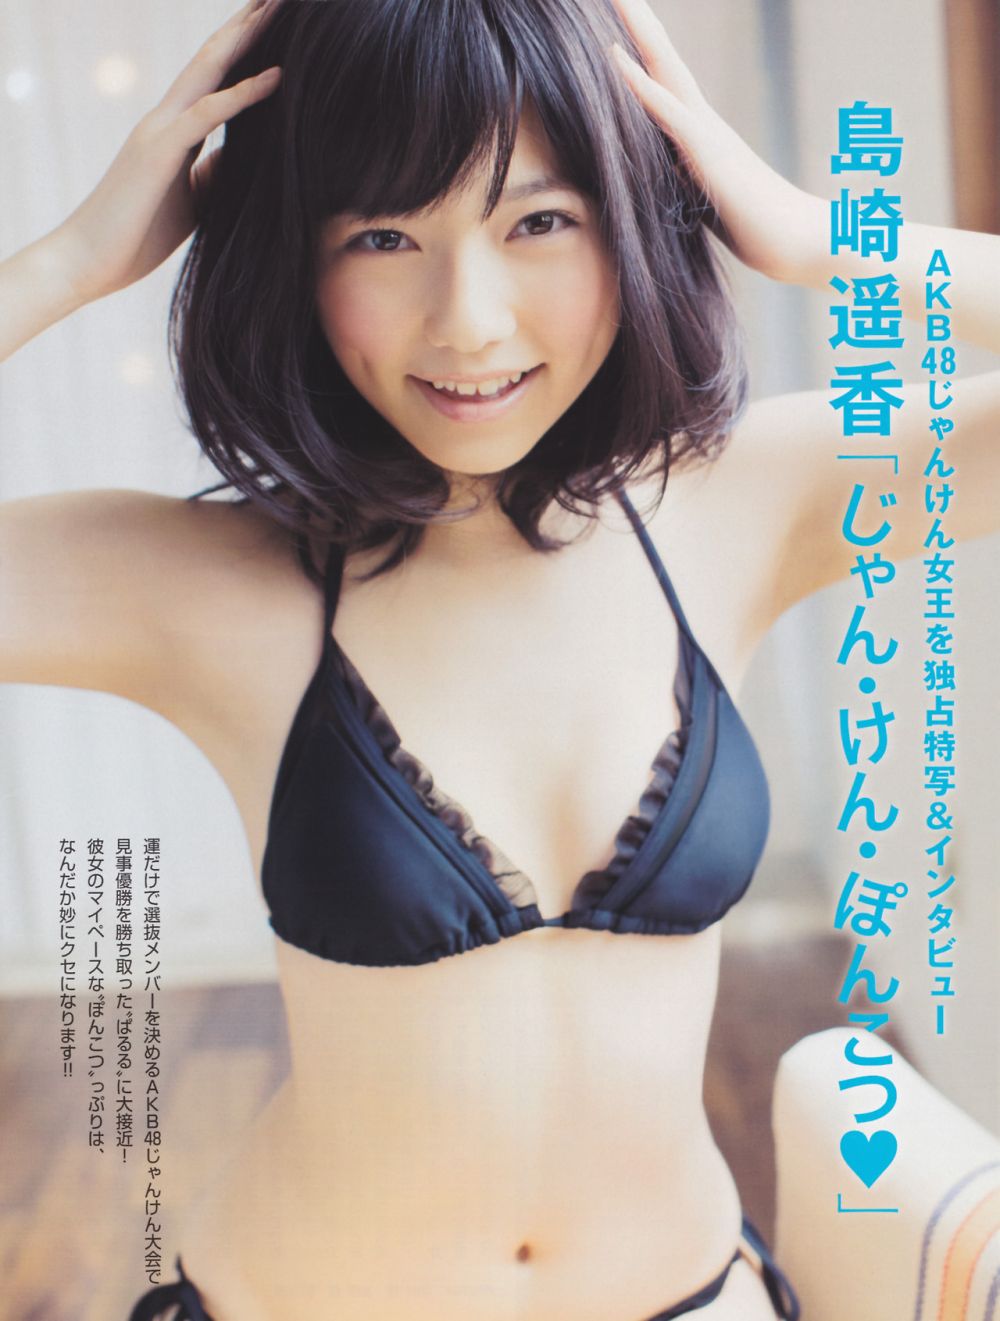 Haruka Shimazaki Sexy and Hottest Photos , Latest Pics